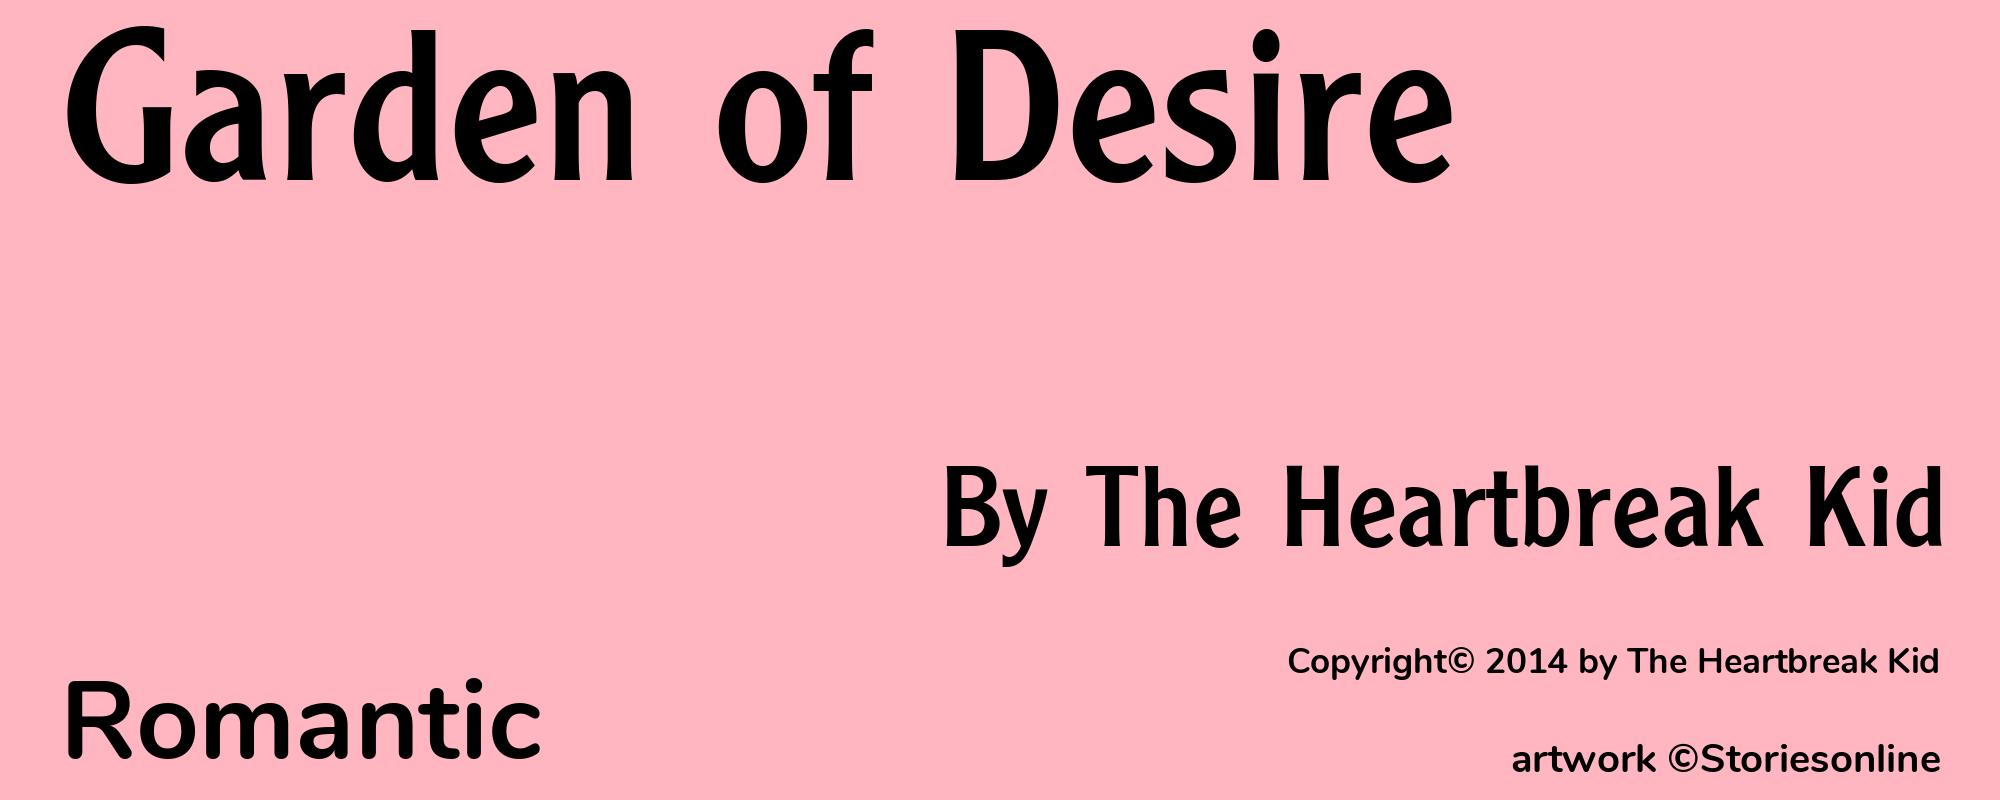 Garden of Desire - Cover